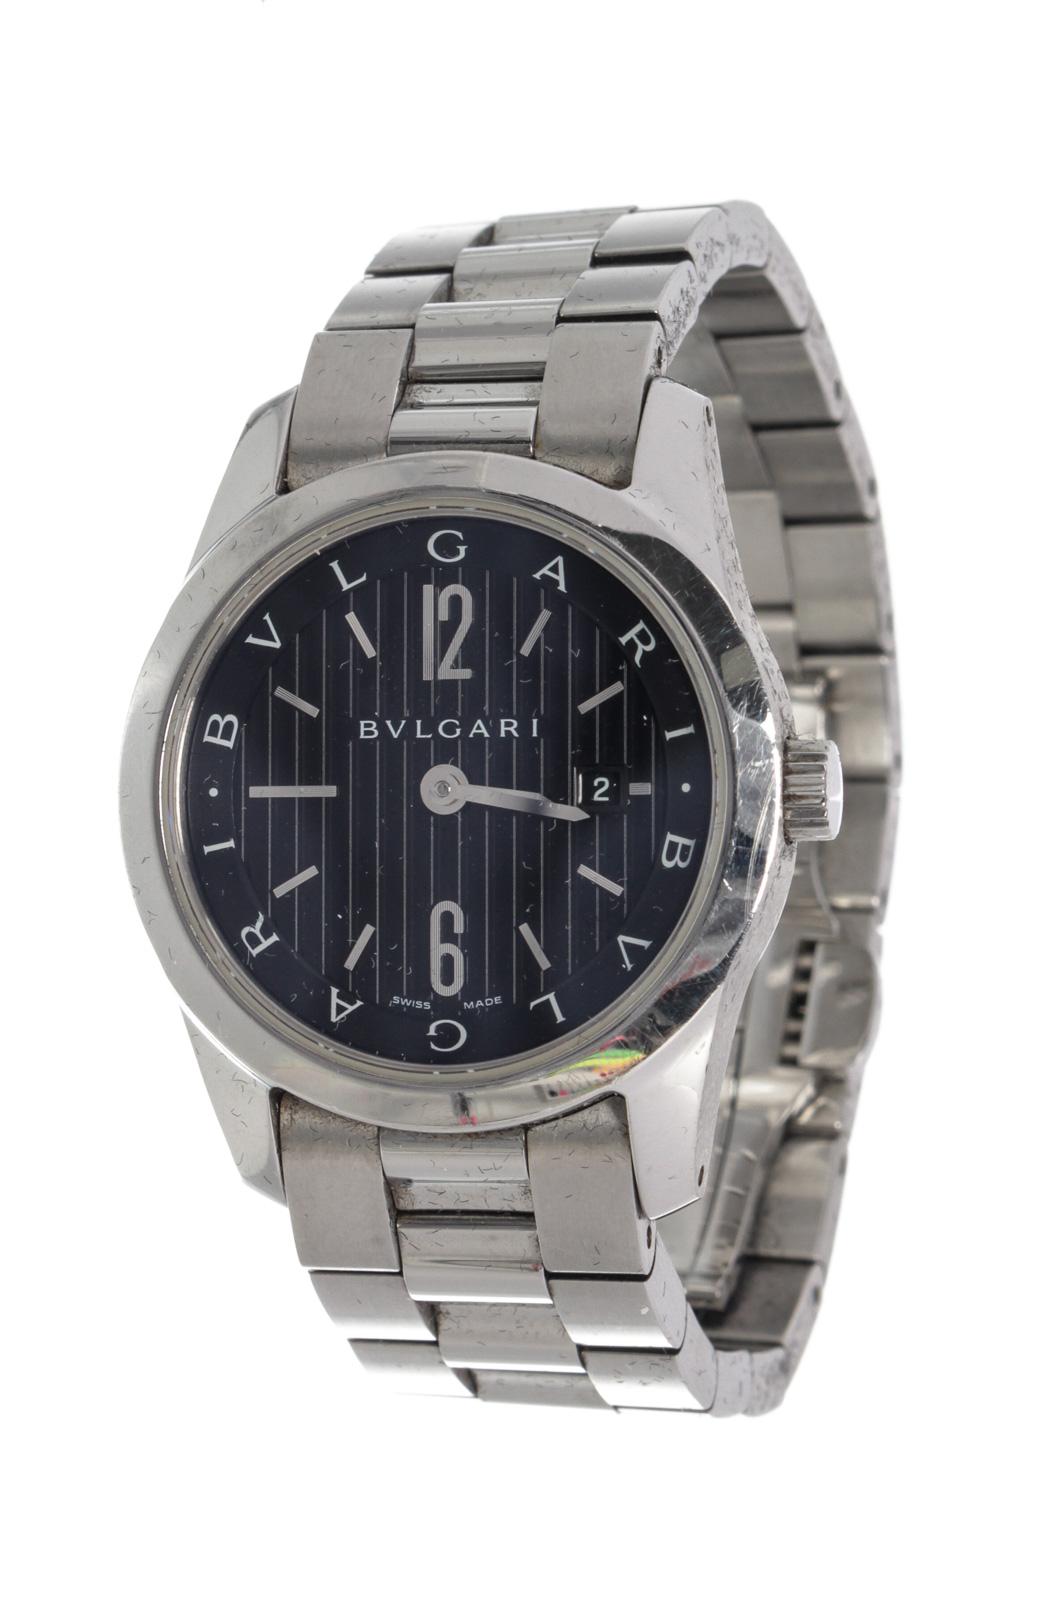 Bvlgari Silver Solo Tempo Quartz Watch with gold-toneÂ hardware.

50069MSCÂ